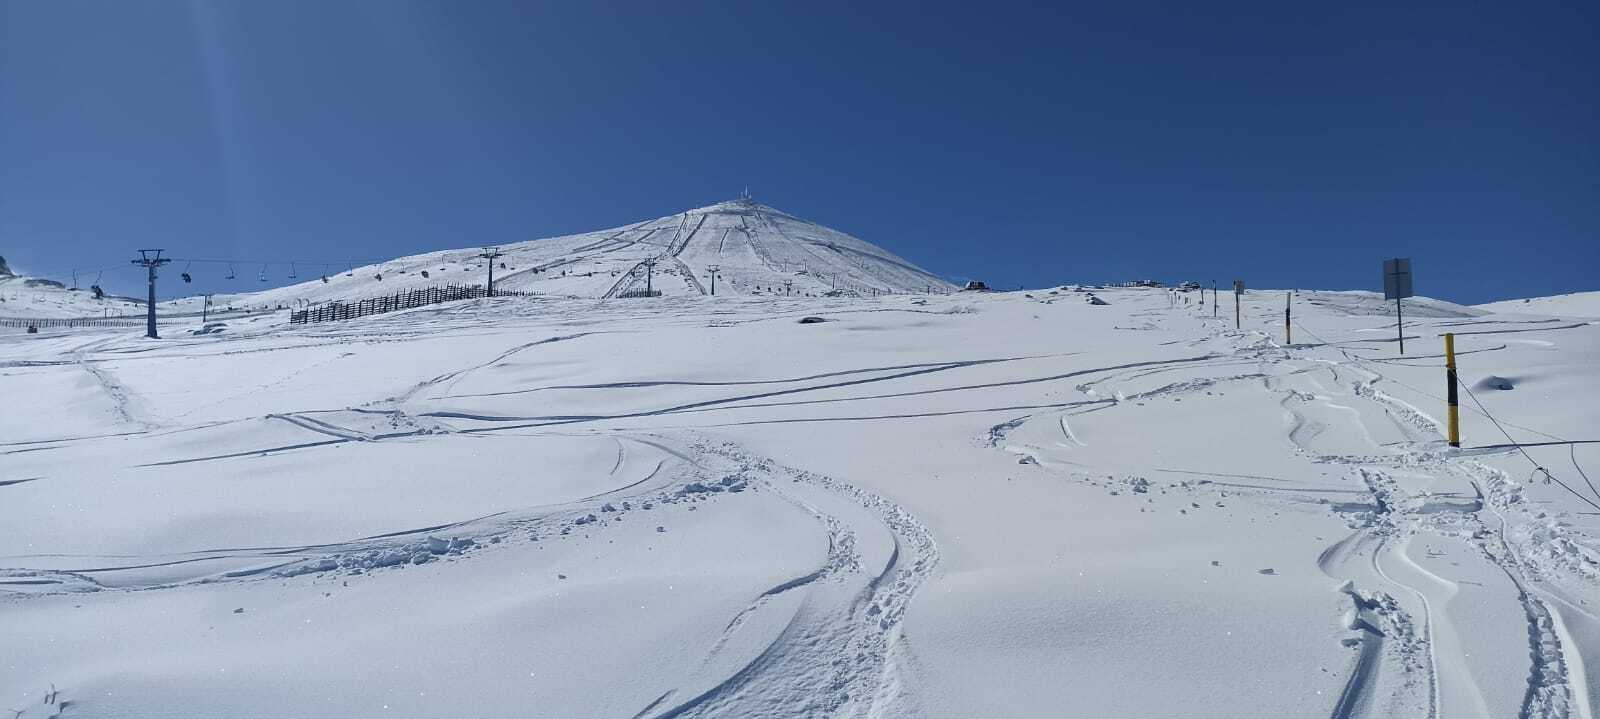 Centro de esqui El Colorado